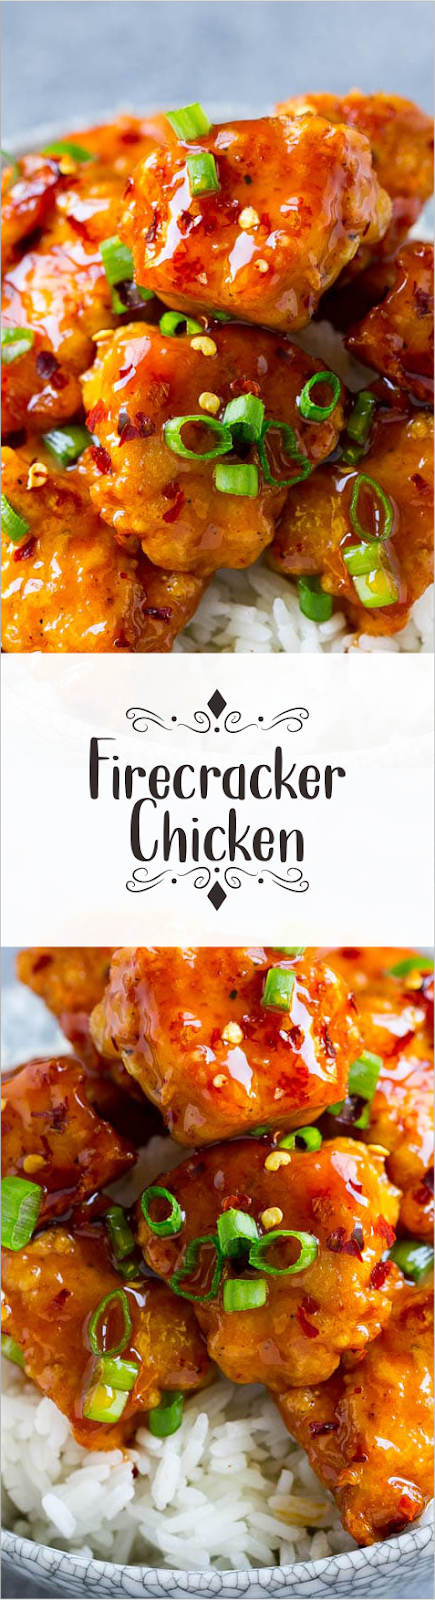 Firecracker Chicken | Briana Berge